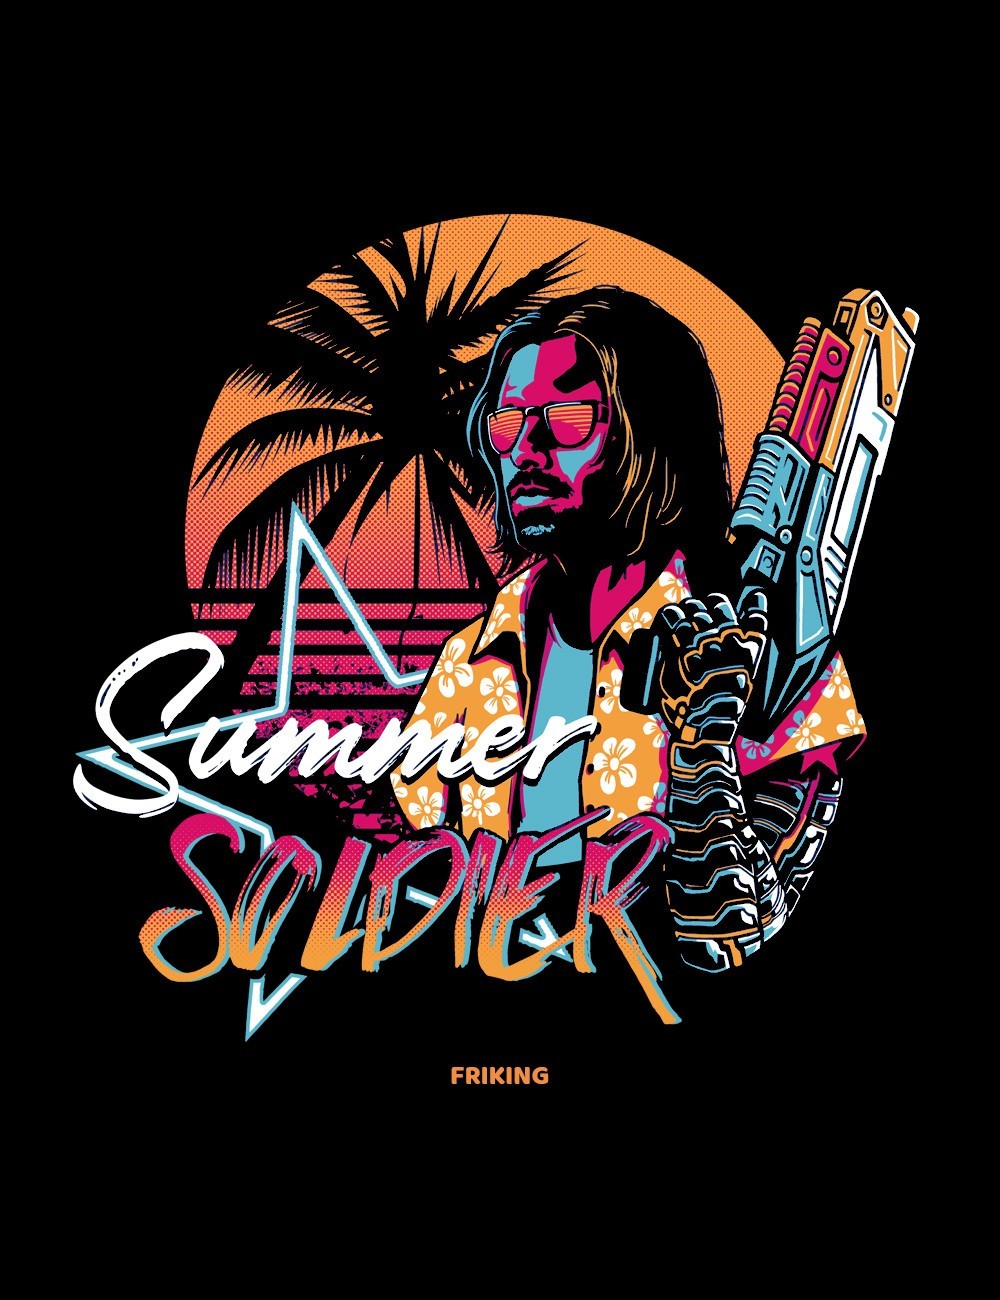  Summer Soldier 